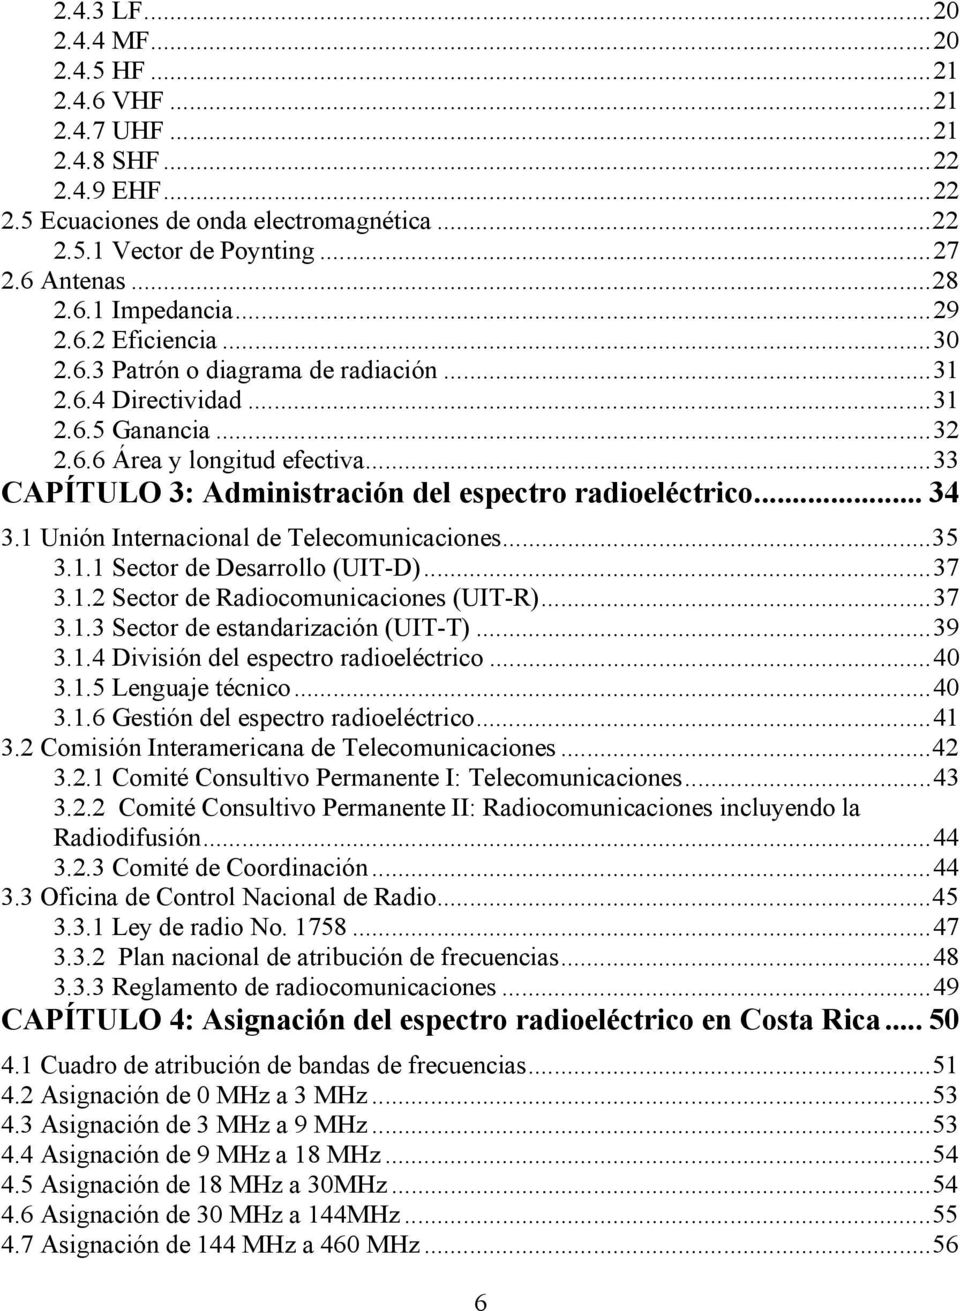 .. 33 CAPÍTULO 3: Administración del espectro radioeléctrico... 34 3.1 Unión Internacional de Telecomunicaciones... 35 3.1.1 Sector de Desarrollo (UIT-D)... 37 3.1.2 Sector de Radiocomunicaciones (UIT-R).